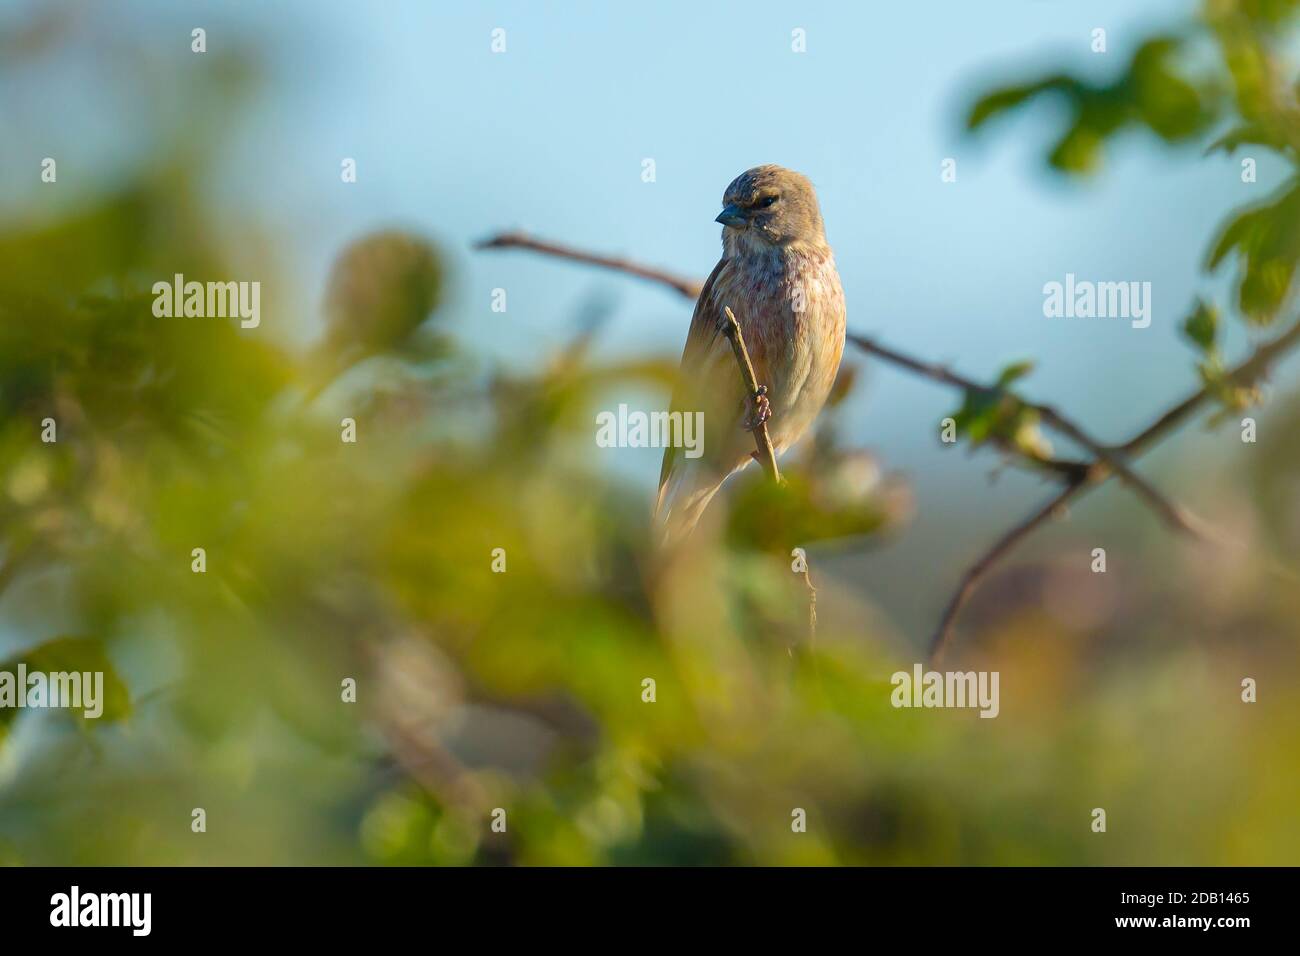 Nahaufnahme Porträt eines Linnet Vogelmännchens, Carduelis cannabina, Anzeige und Suche nach einem Partner während der Frühjahrssaison. Singen in den frühen Morgensonli Stockfoto